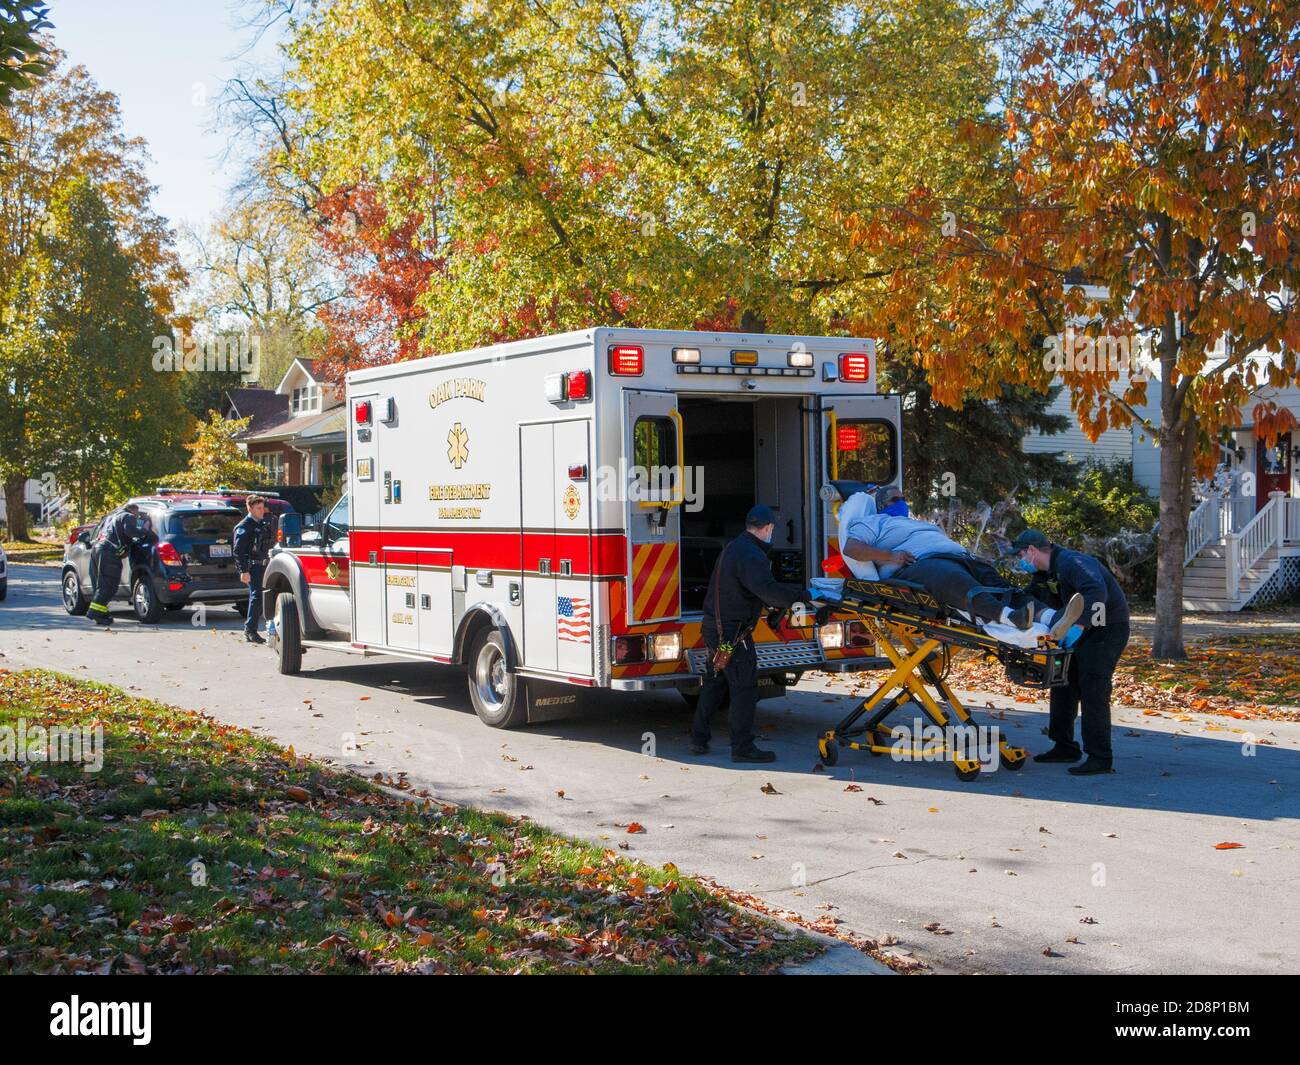 Oak Park, Illinois, Stati Uniti. 31 ottobre 2020. I paramedici caricano una vittima di un incidente automobilistico in un'ambulanza durante la pandemia COVID-19. Foto Stock